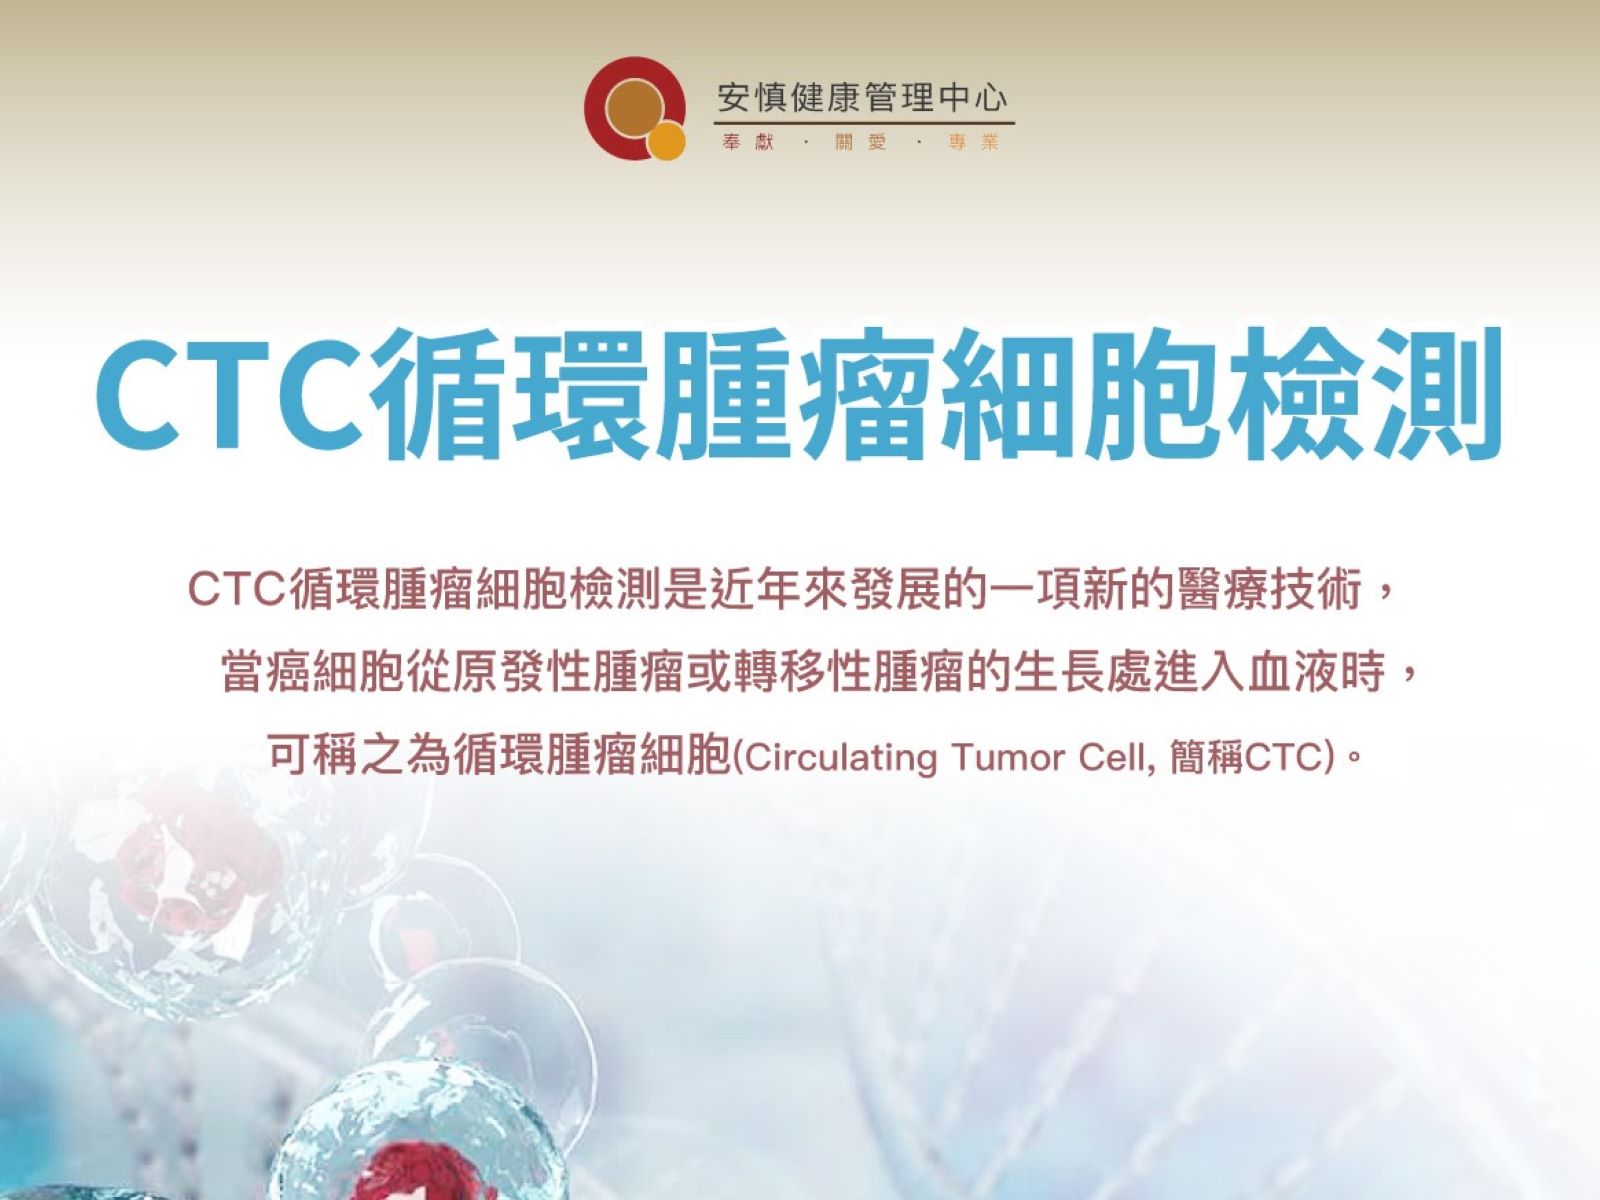 CTC循環腫瘤細胞檢測